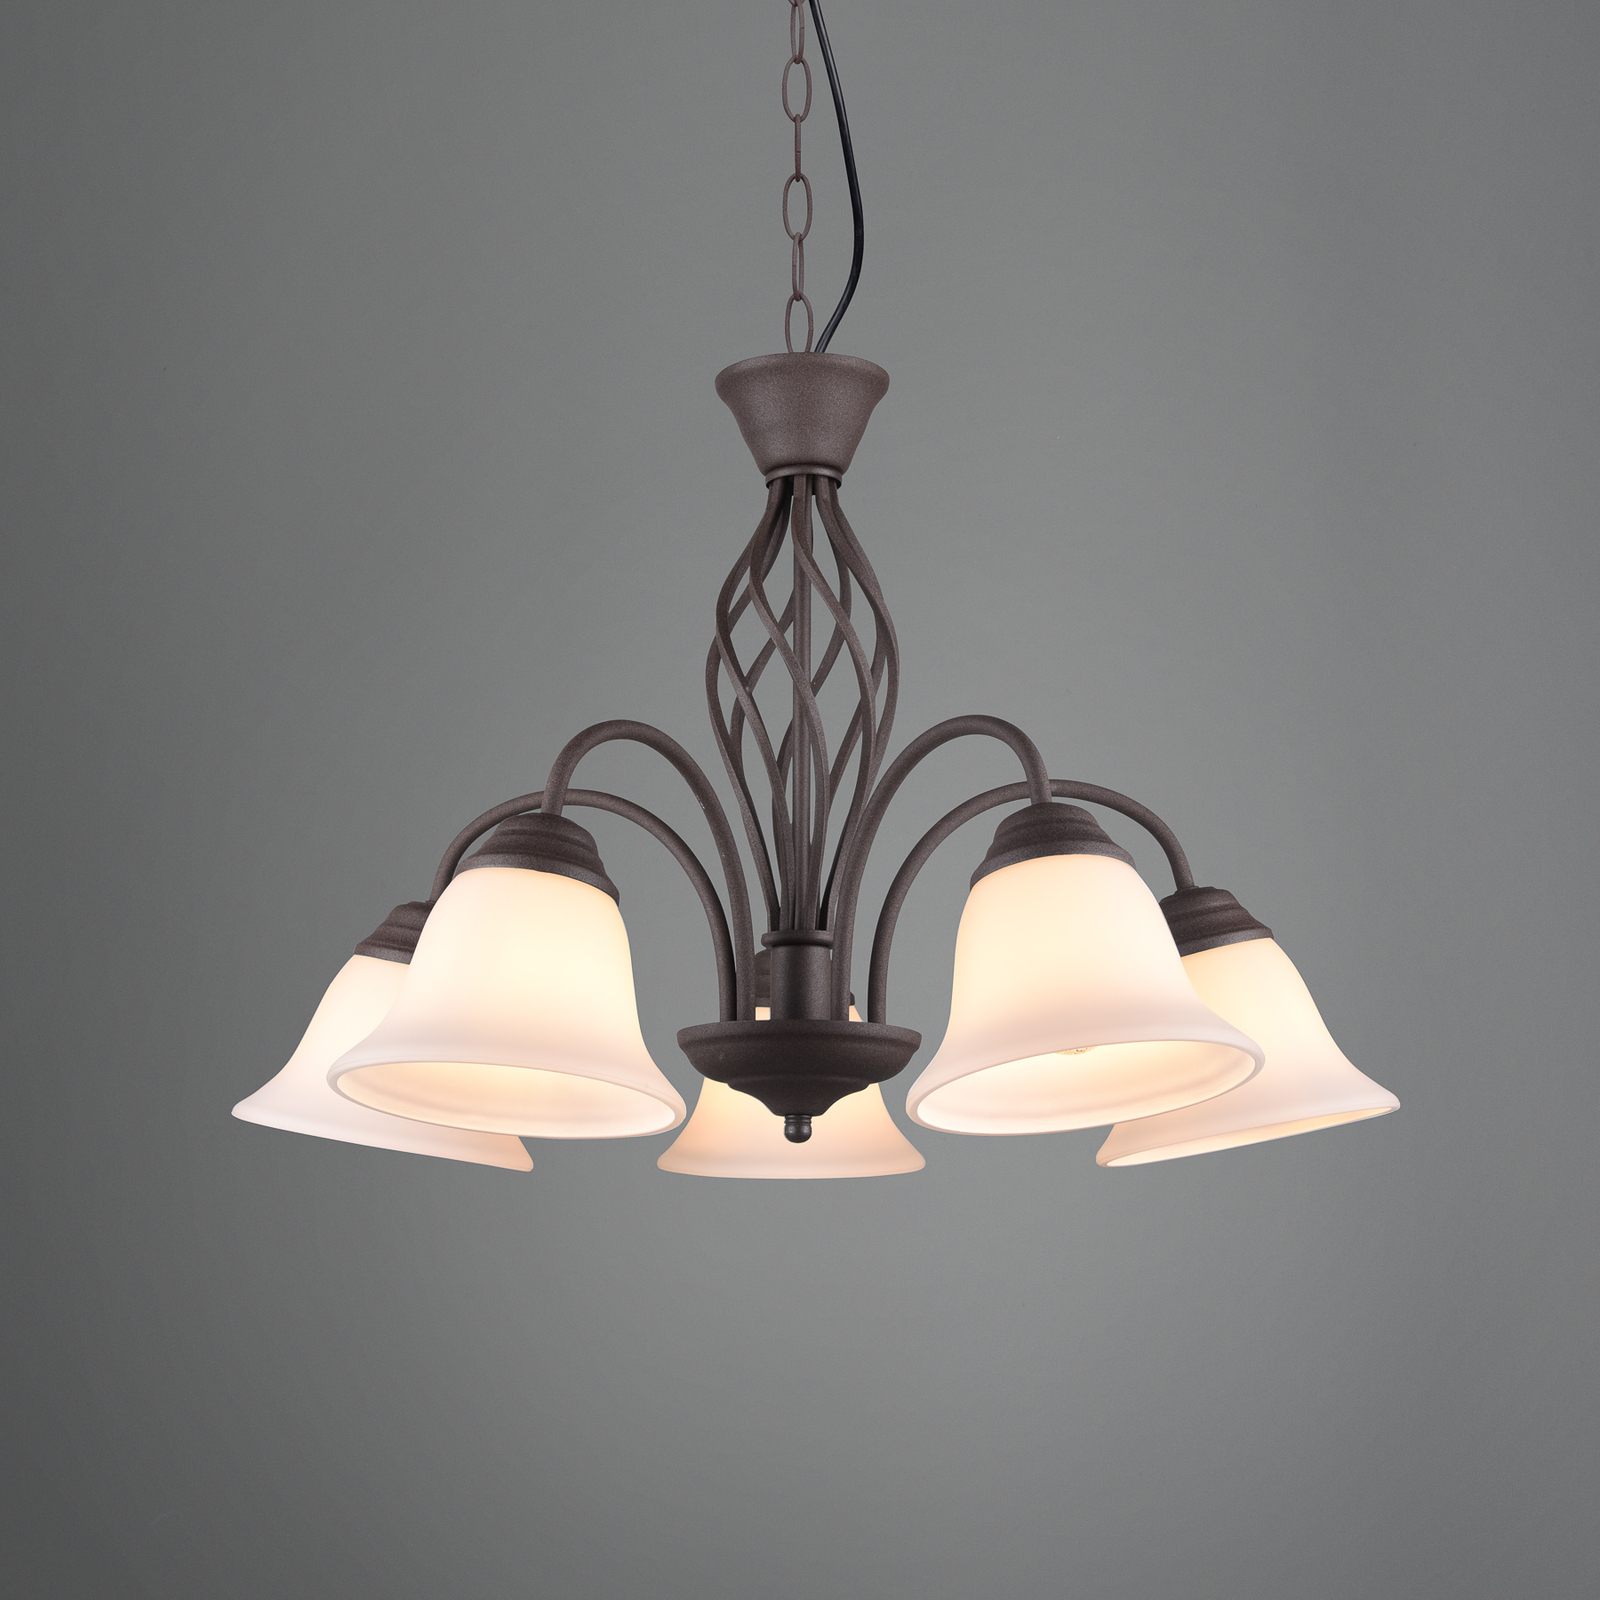 Hanglamp Rustica, roestkleuren, 5-lamps